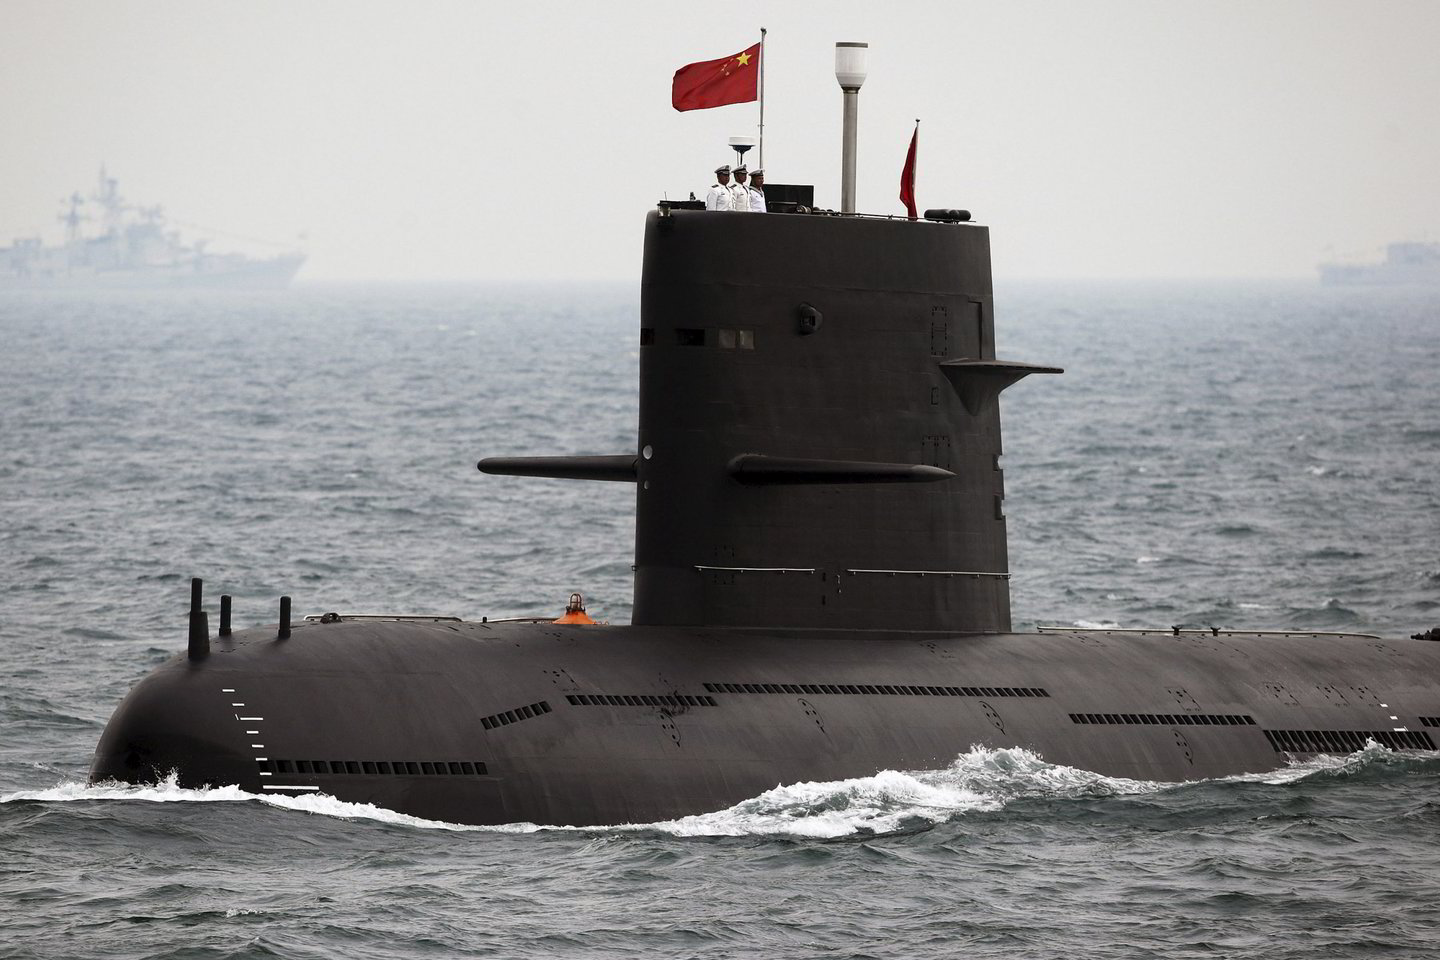  Pekinas nemažai investavo modernizuodamas didžiąją dalį povandeninių laivų.<br> Reuters/Scanpix nuotr.